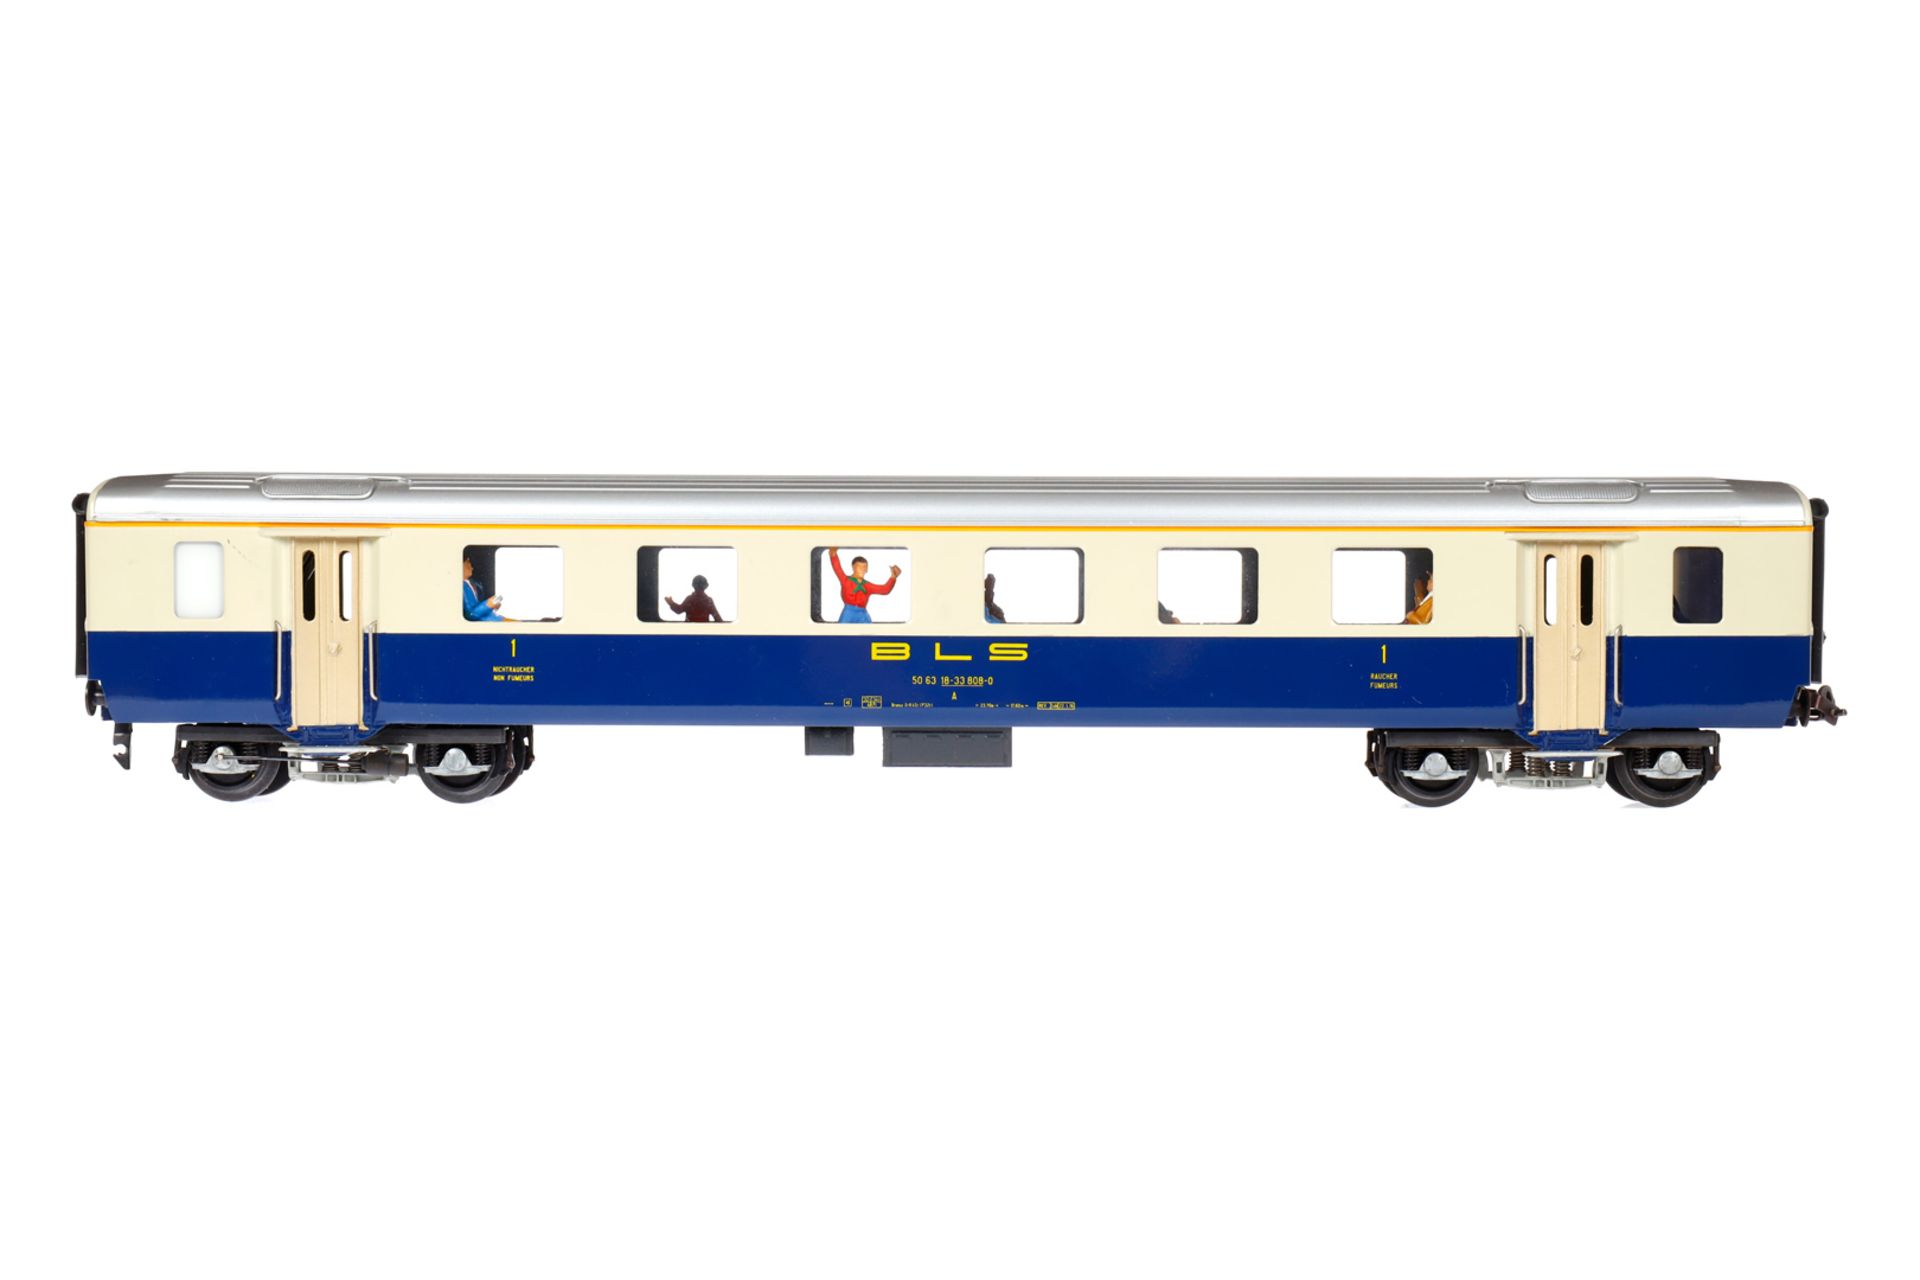 Hermann Personenwagen, Spur 0, creme/blau, mit Inneneinrichtung und Fremdbeleuchtung, 1. Klasse,